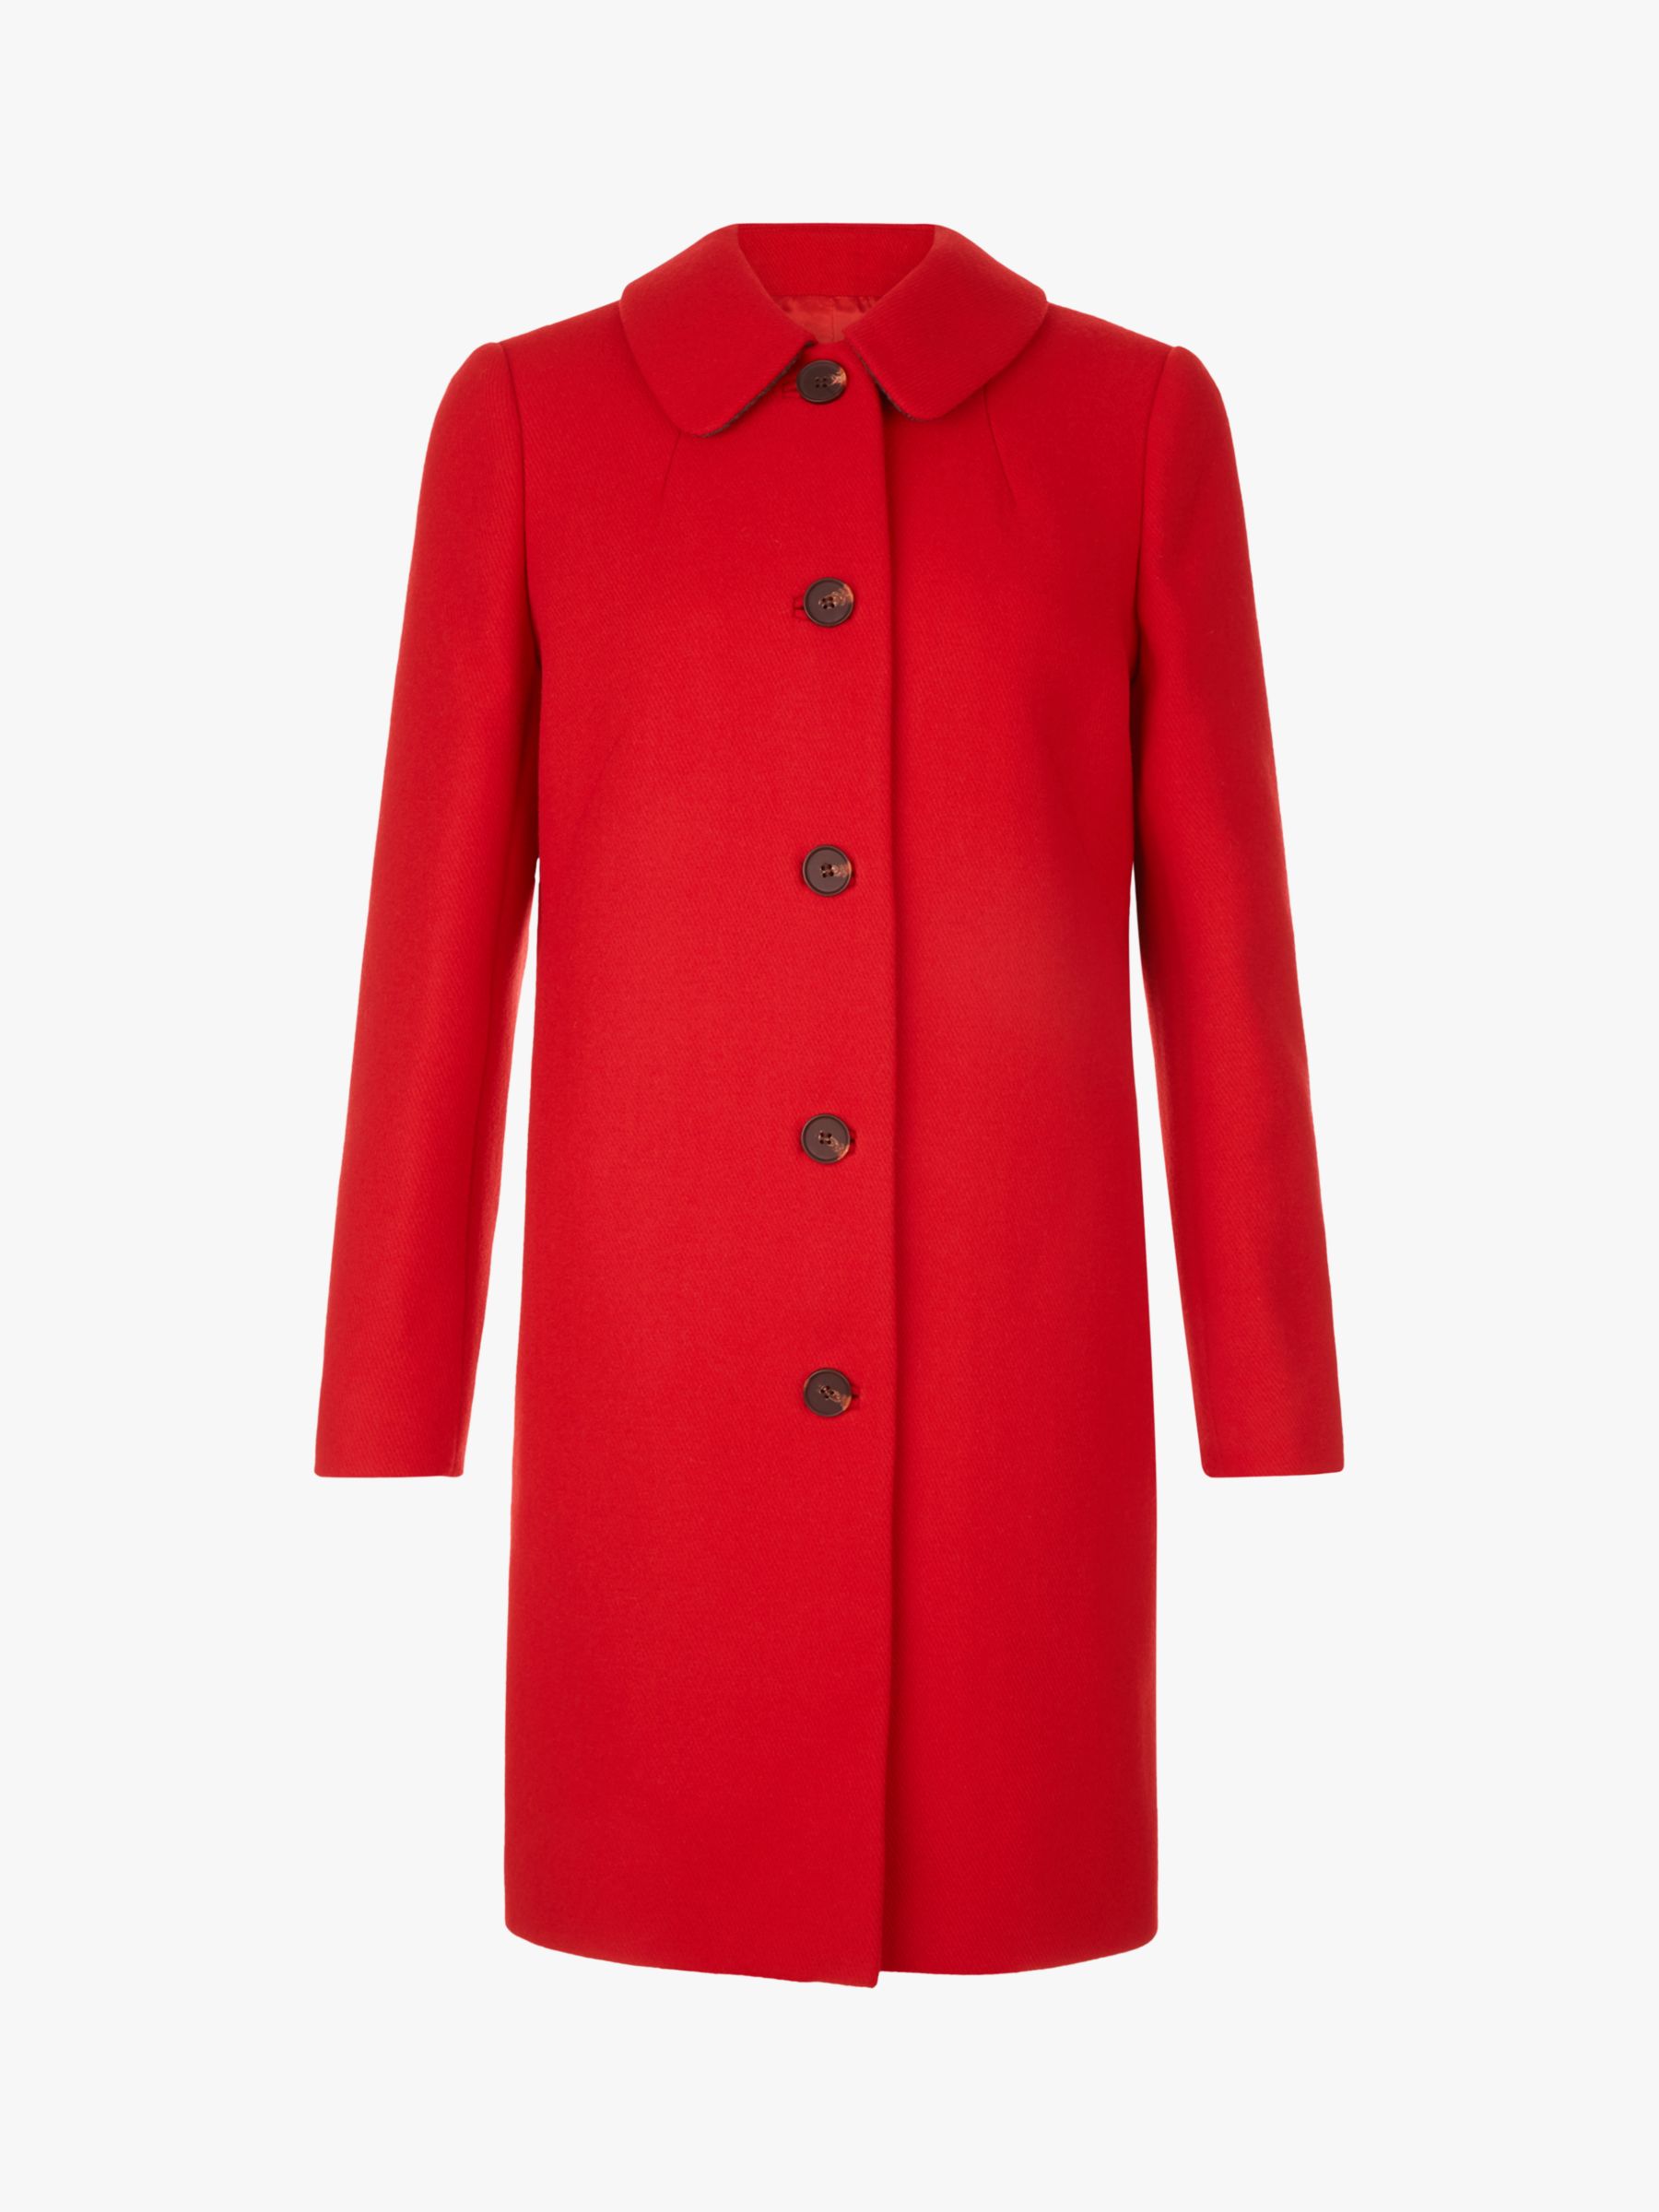 Hobbs Carron Coat, Red